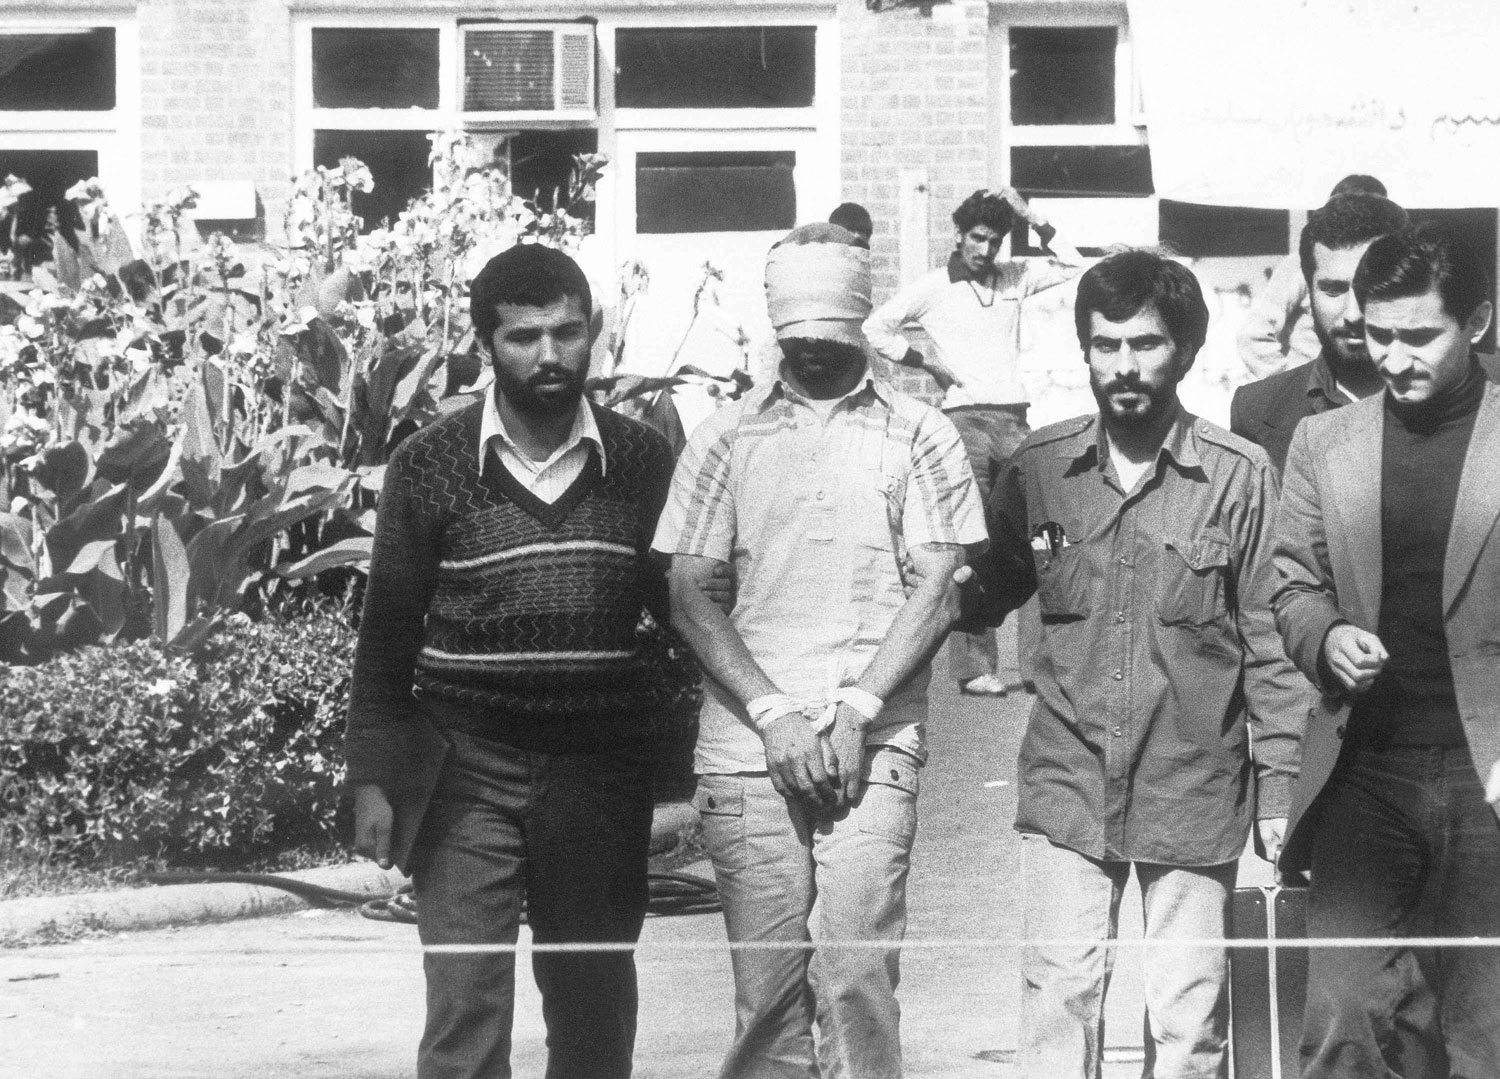 ايران لم تتوقف عن سياسة احتجاز الرهائن منذ حادثة السفارة الأميركية قبل 40 عاما